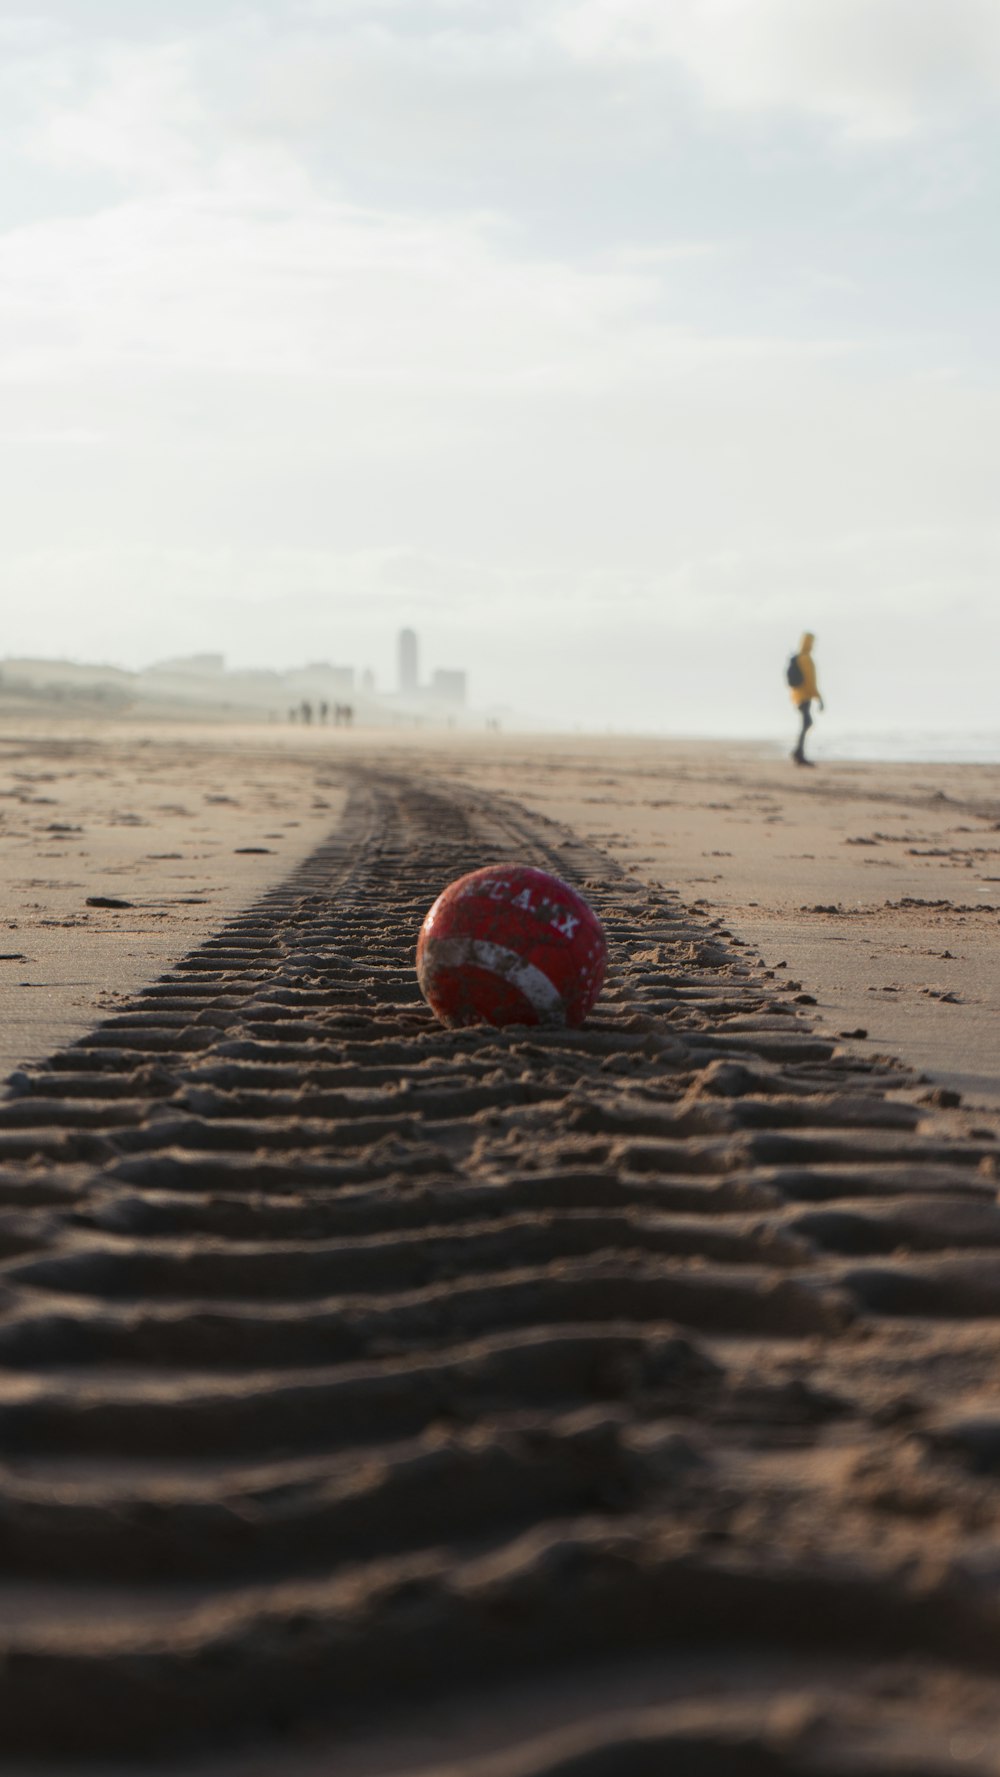 昼間の茶色の砂浜に赤と白のサッカーボール